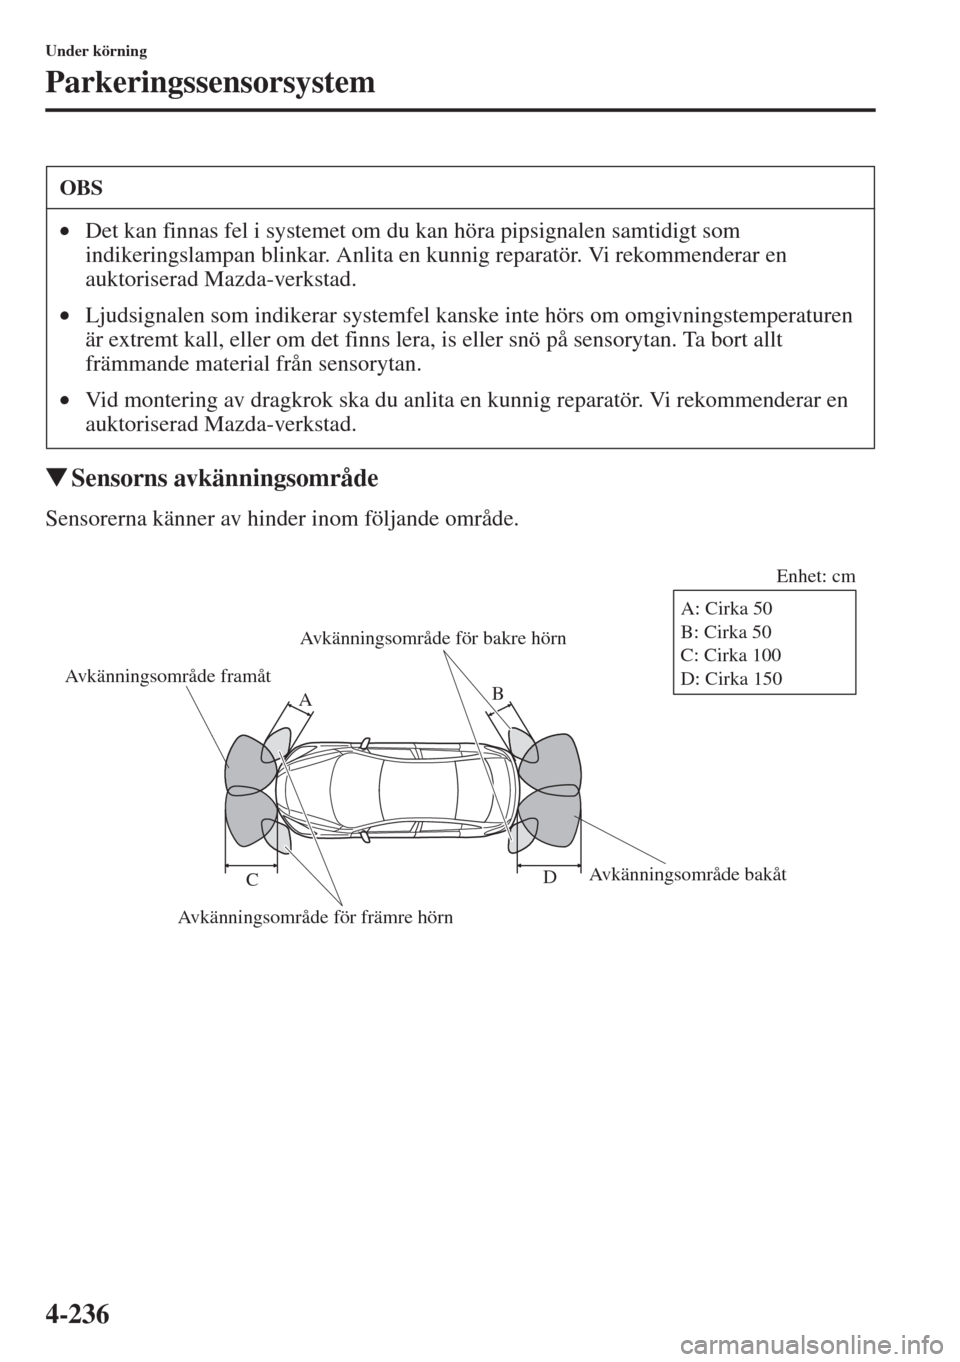 MAZDA MODEL CX-5 2015  Ägarmanual (in Swedish) 4-236
Under körning
Parkeringssensorsystem
�WSensorns avkänningsområde
Sensorerna känner av hinder inom följande område.
OBS
•Det kan finnas fel i systemet om du kan höra pipsignalen samtidig